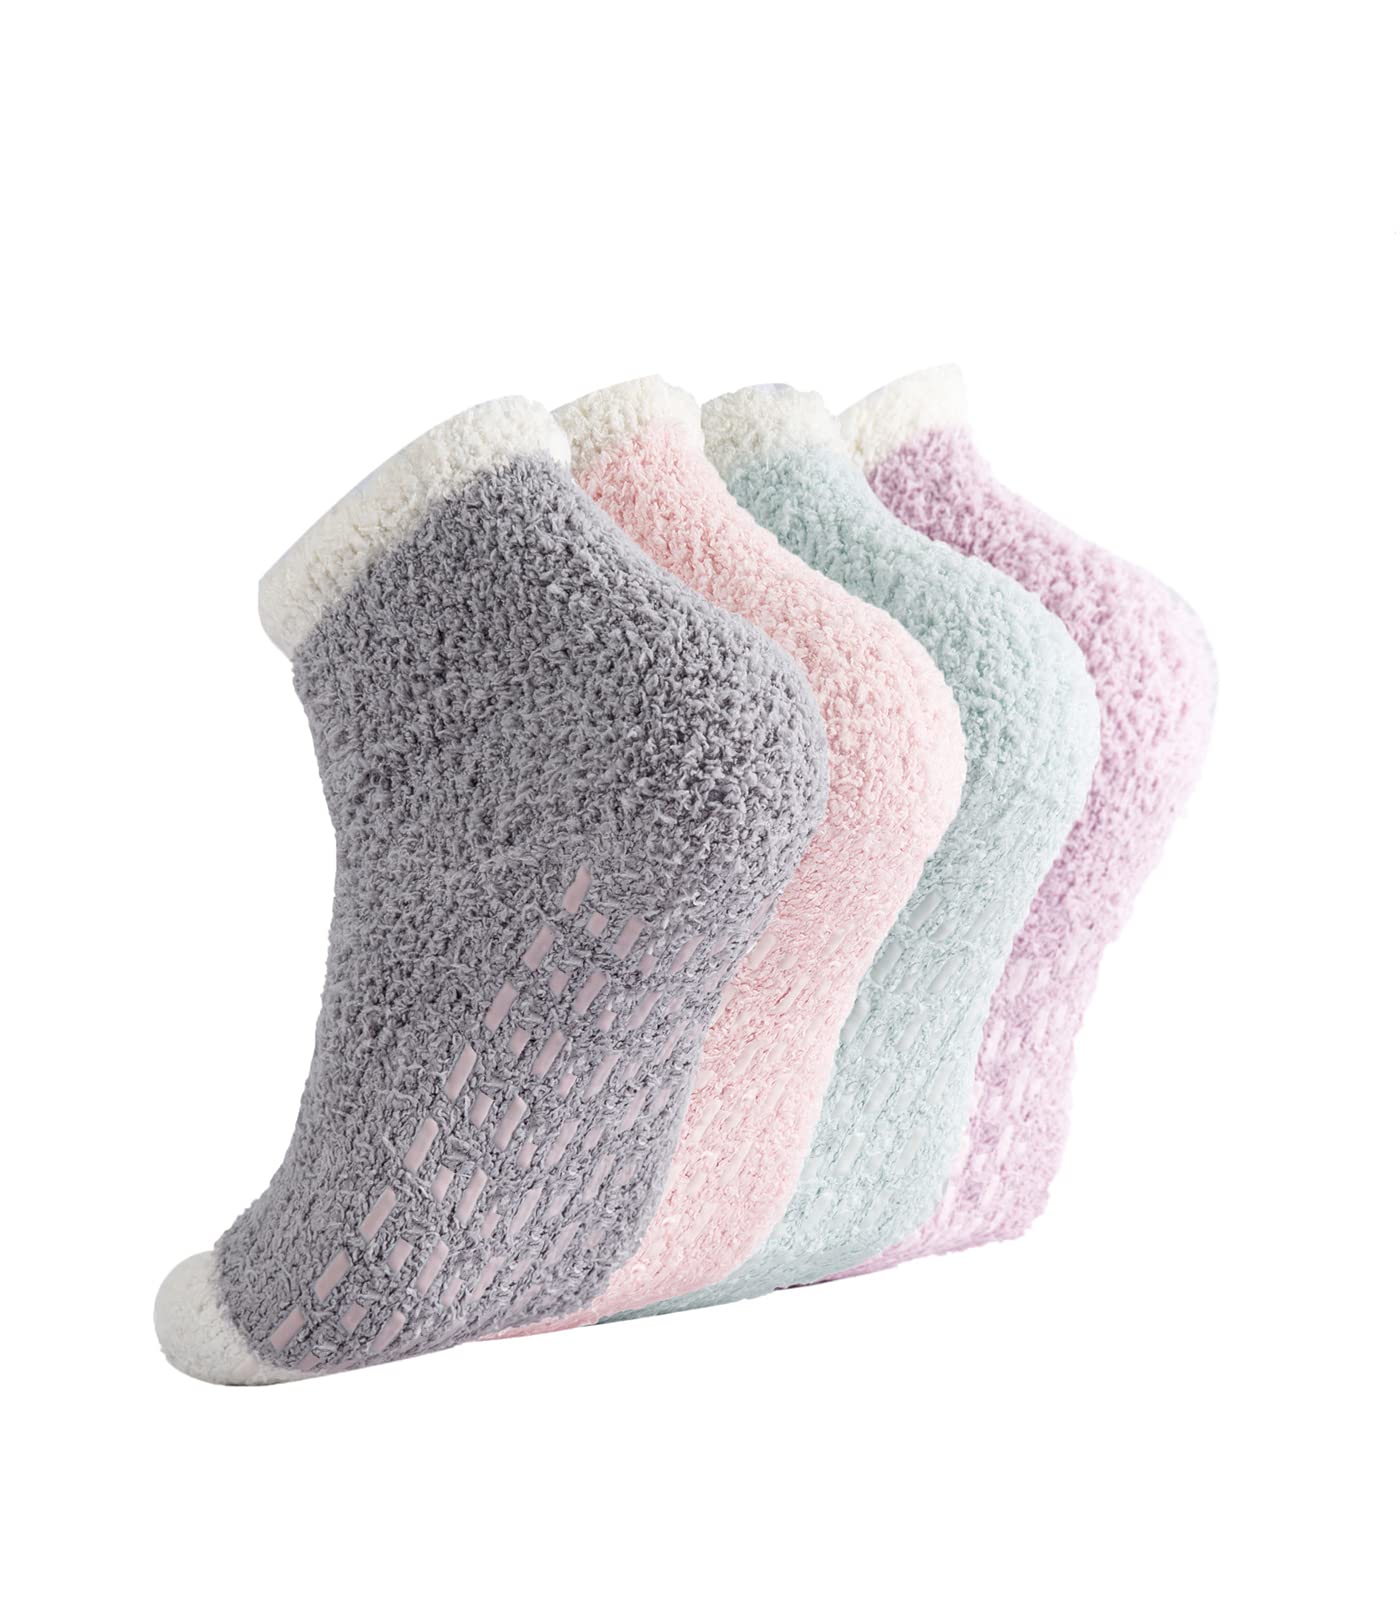 Non Slip Socks Hospital Socks with Grips for Women Grip Socks for Women  Fluffy Socks with